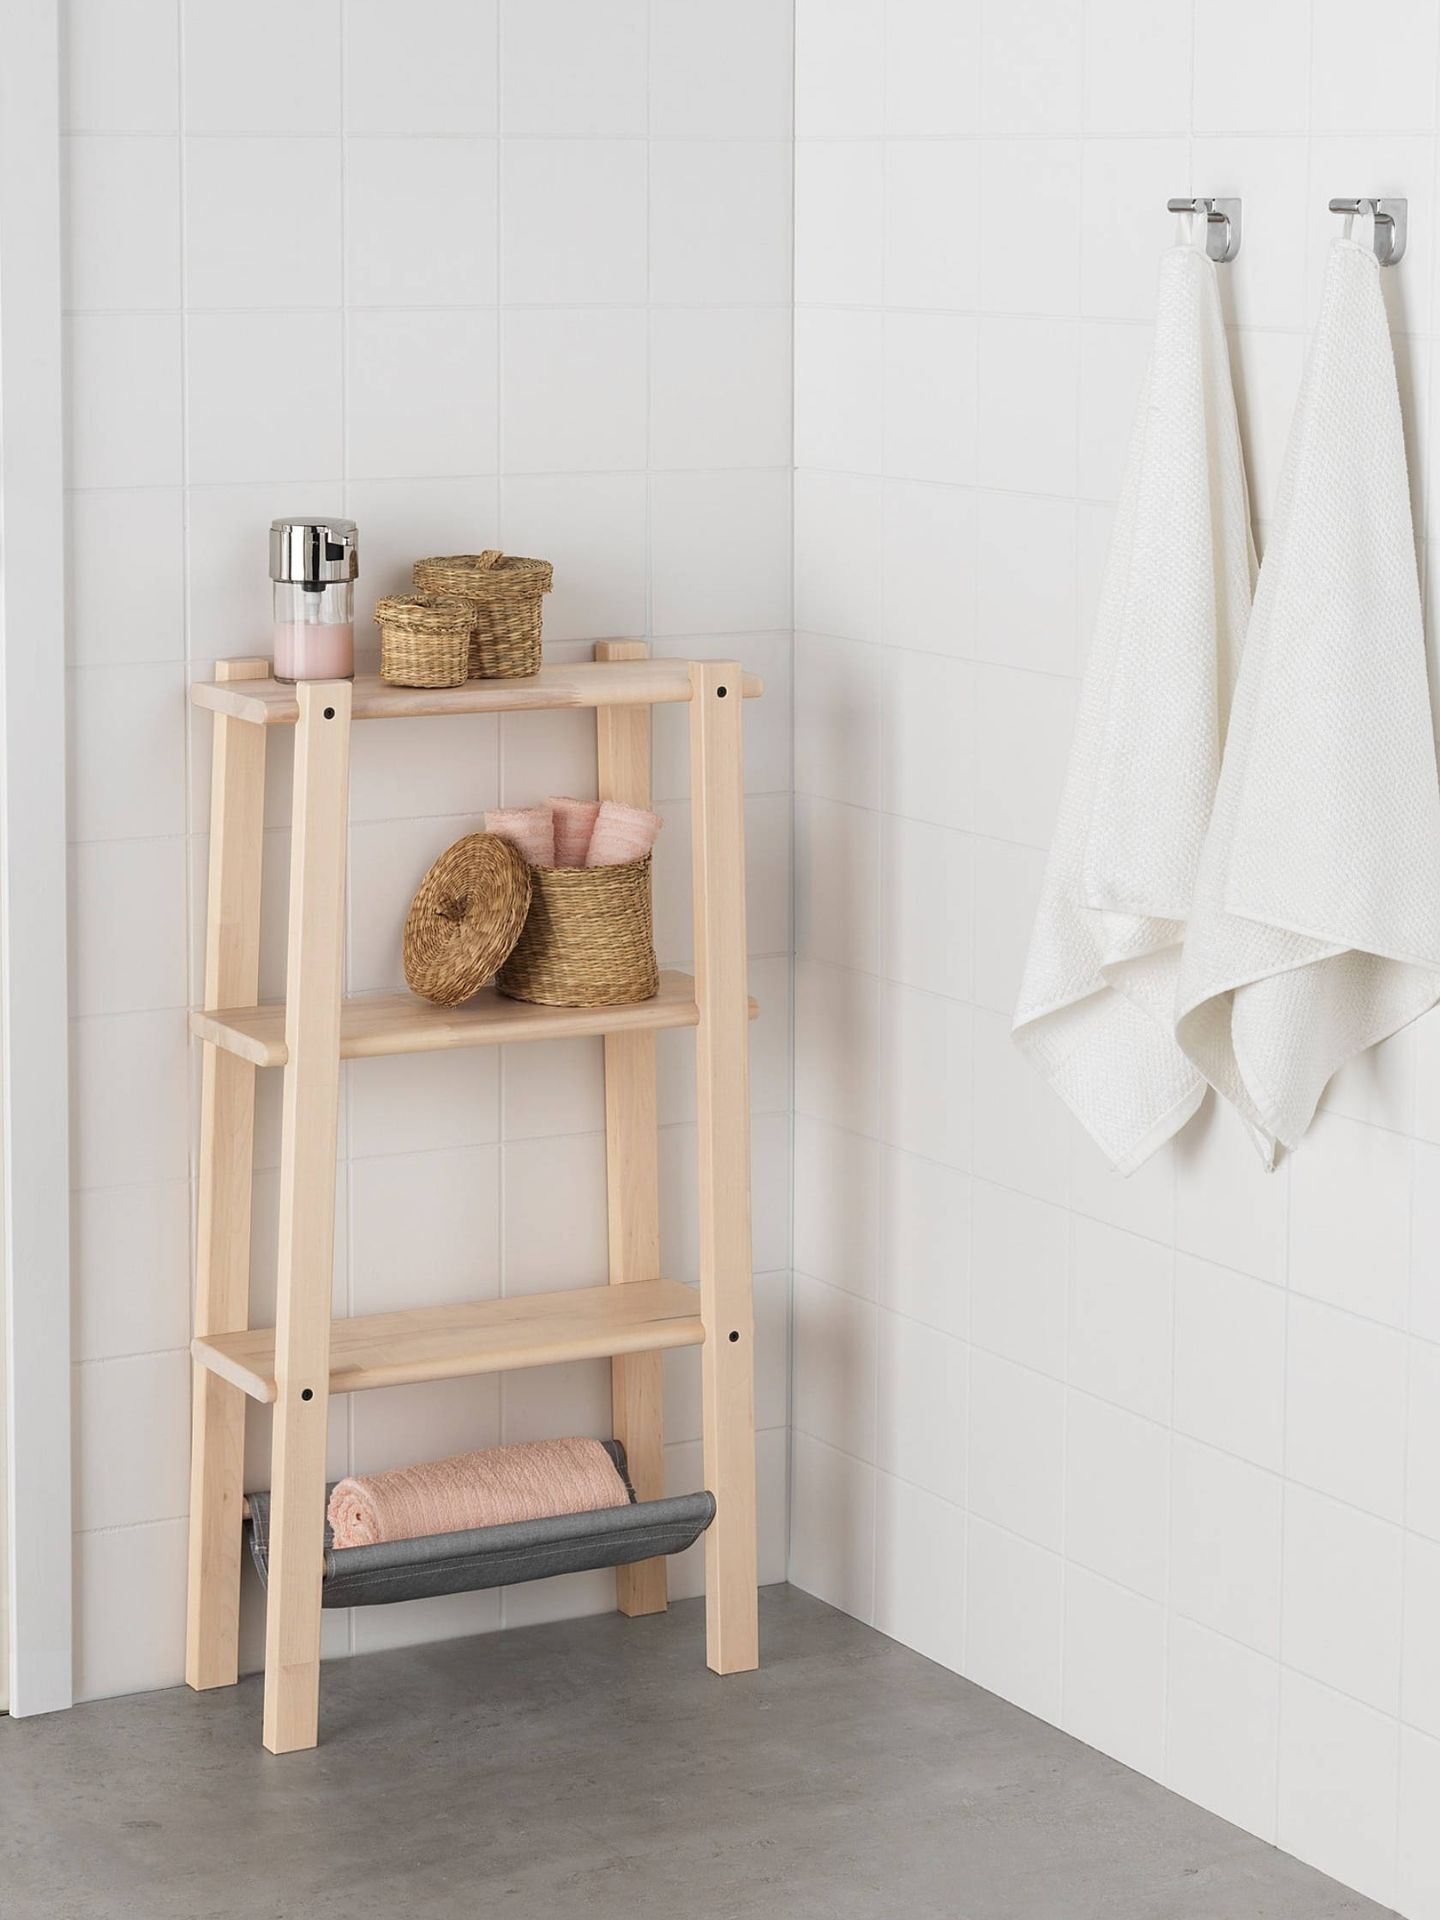 Muebles de Ikea para ganar espacio en un baño pequeño. (Cortesía)